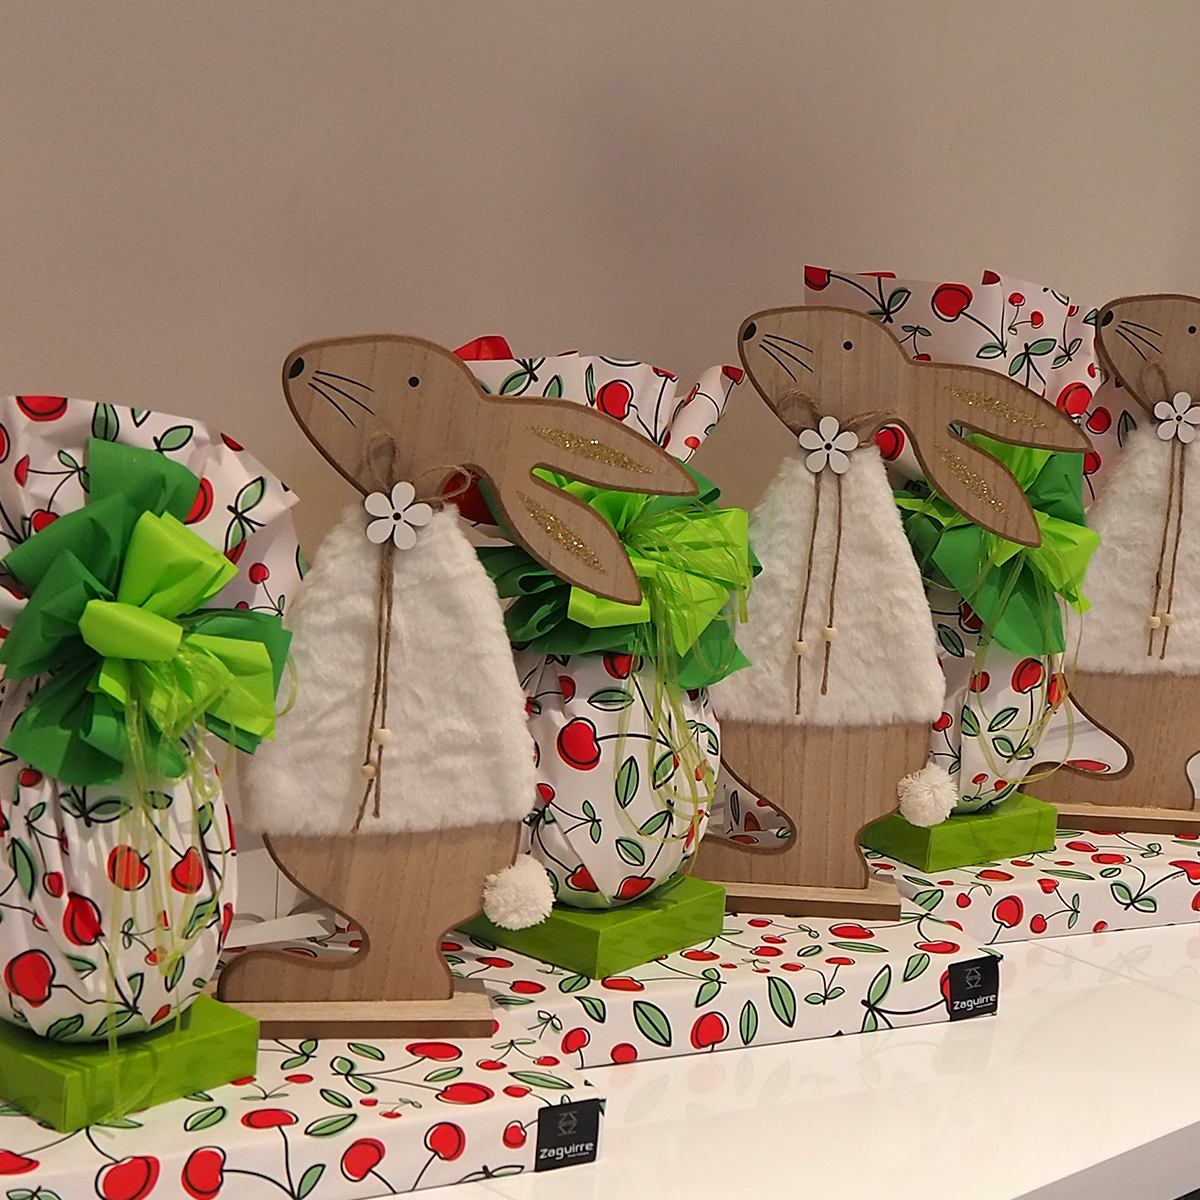 Ous de Pasqua grans de xocolata artesans elaborats per Zaguirre Pastisser amb conills de fusta de decoració